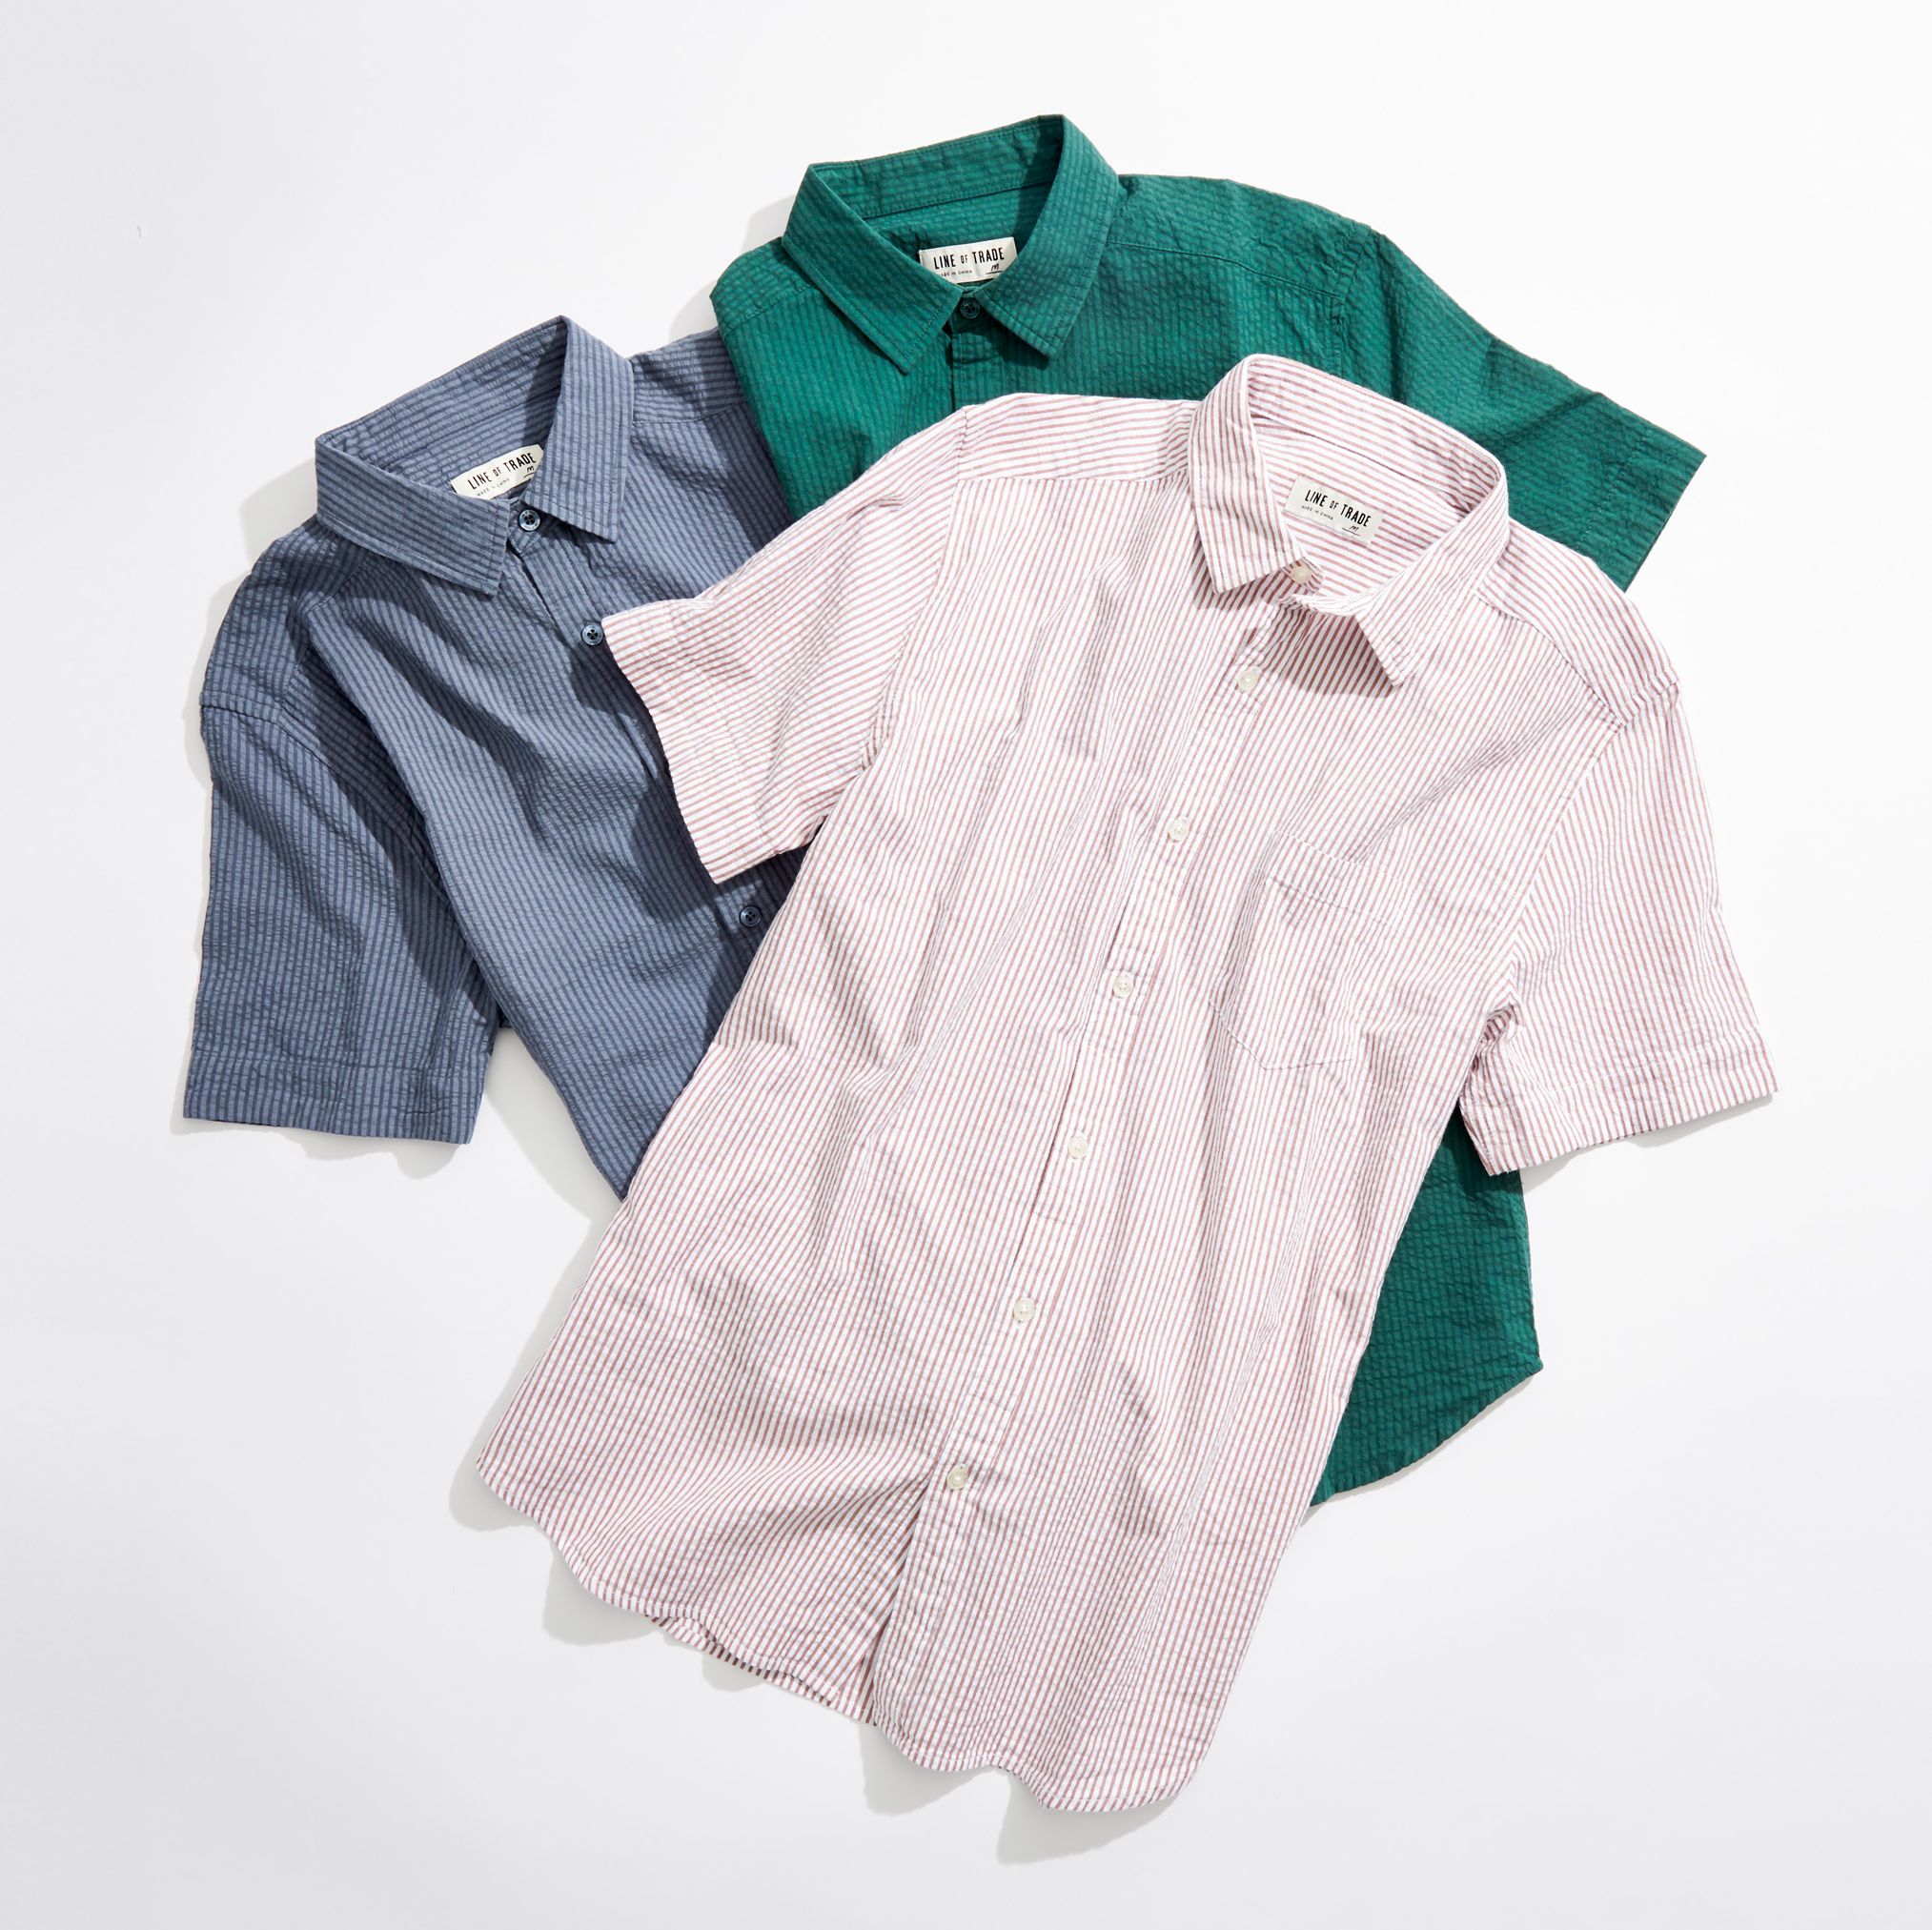 Line of Trade's Breezy Summer Shirt Will Make You a Seersucker Convert